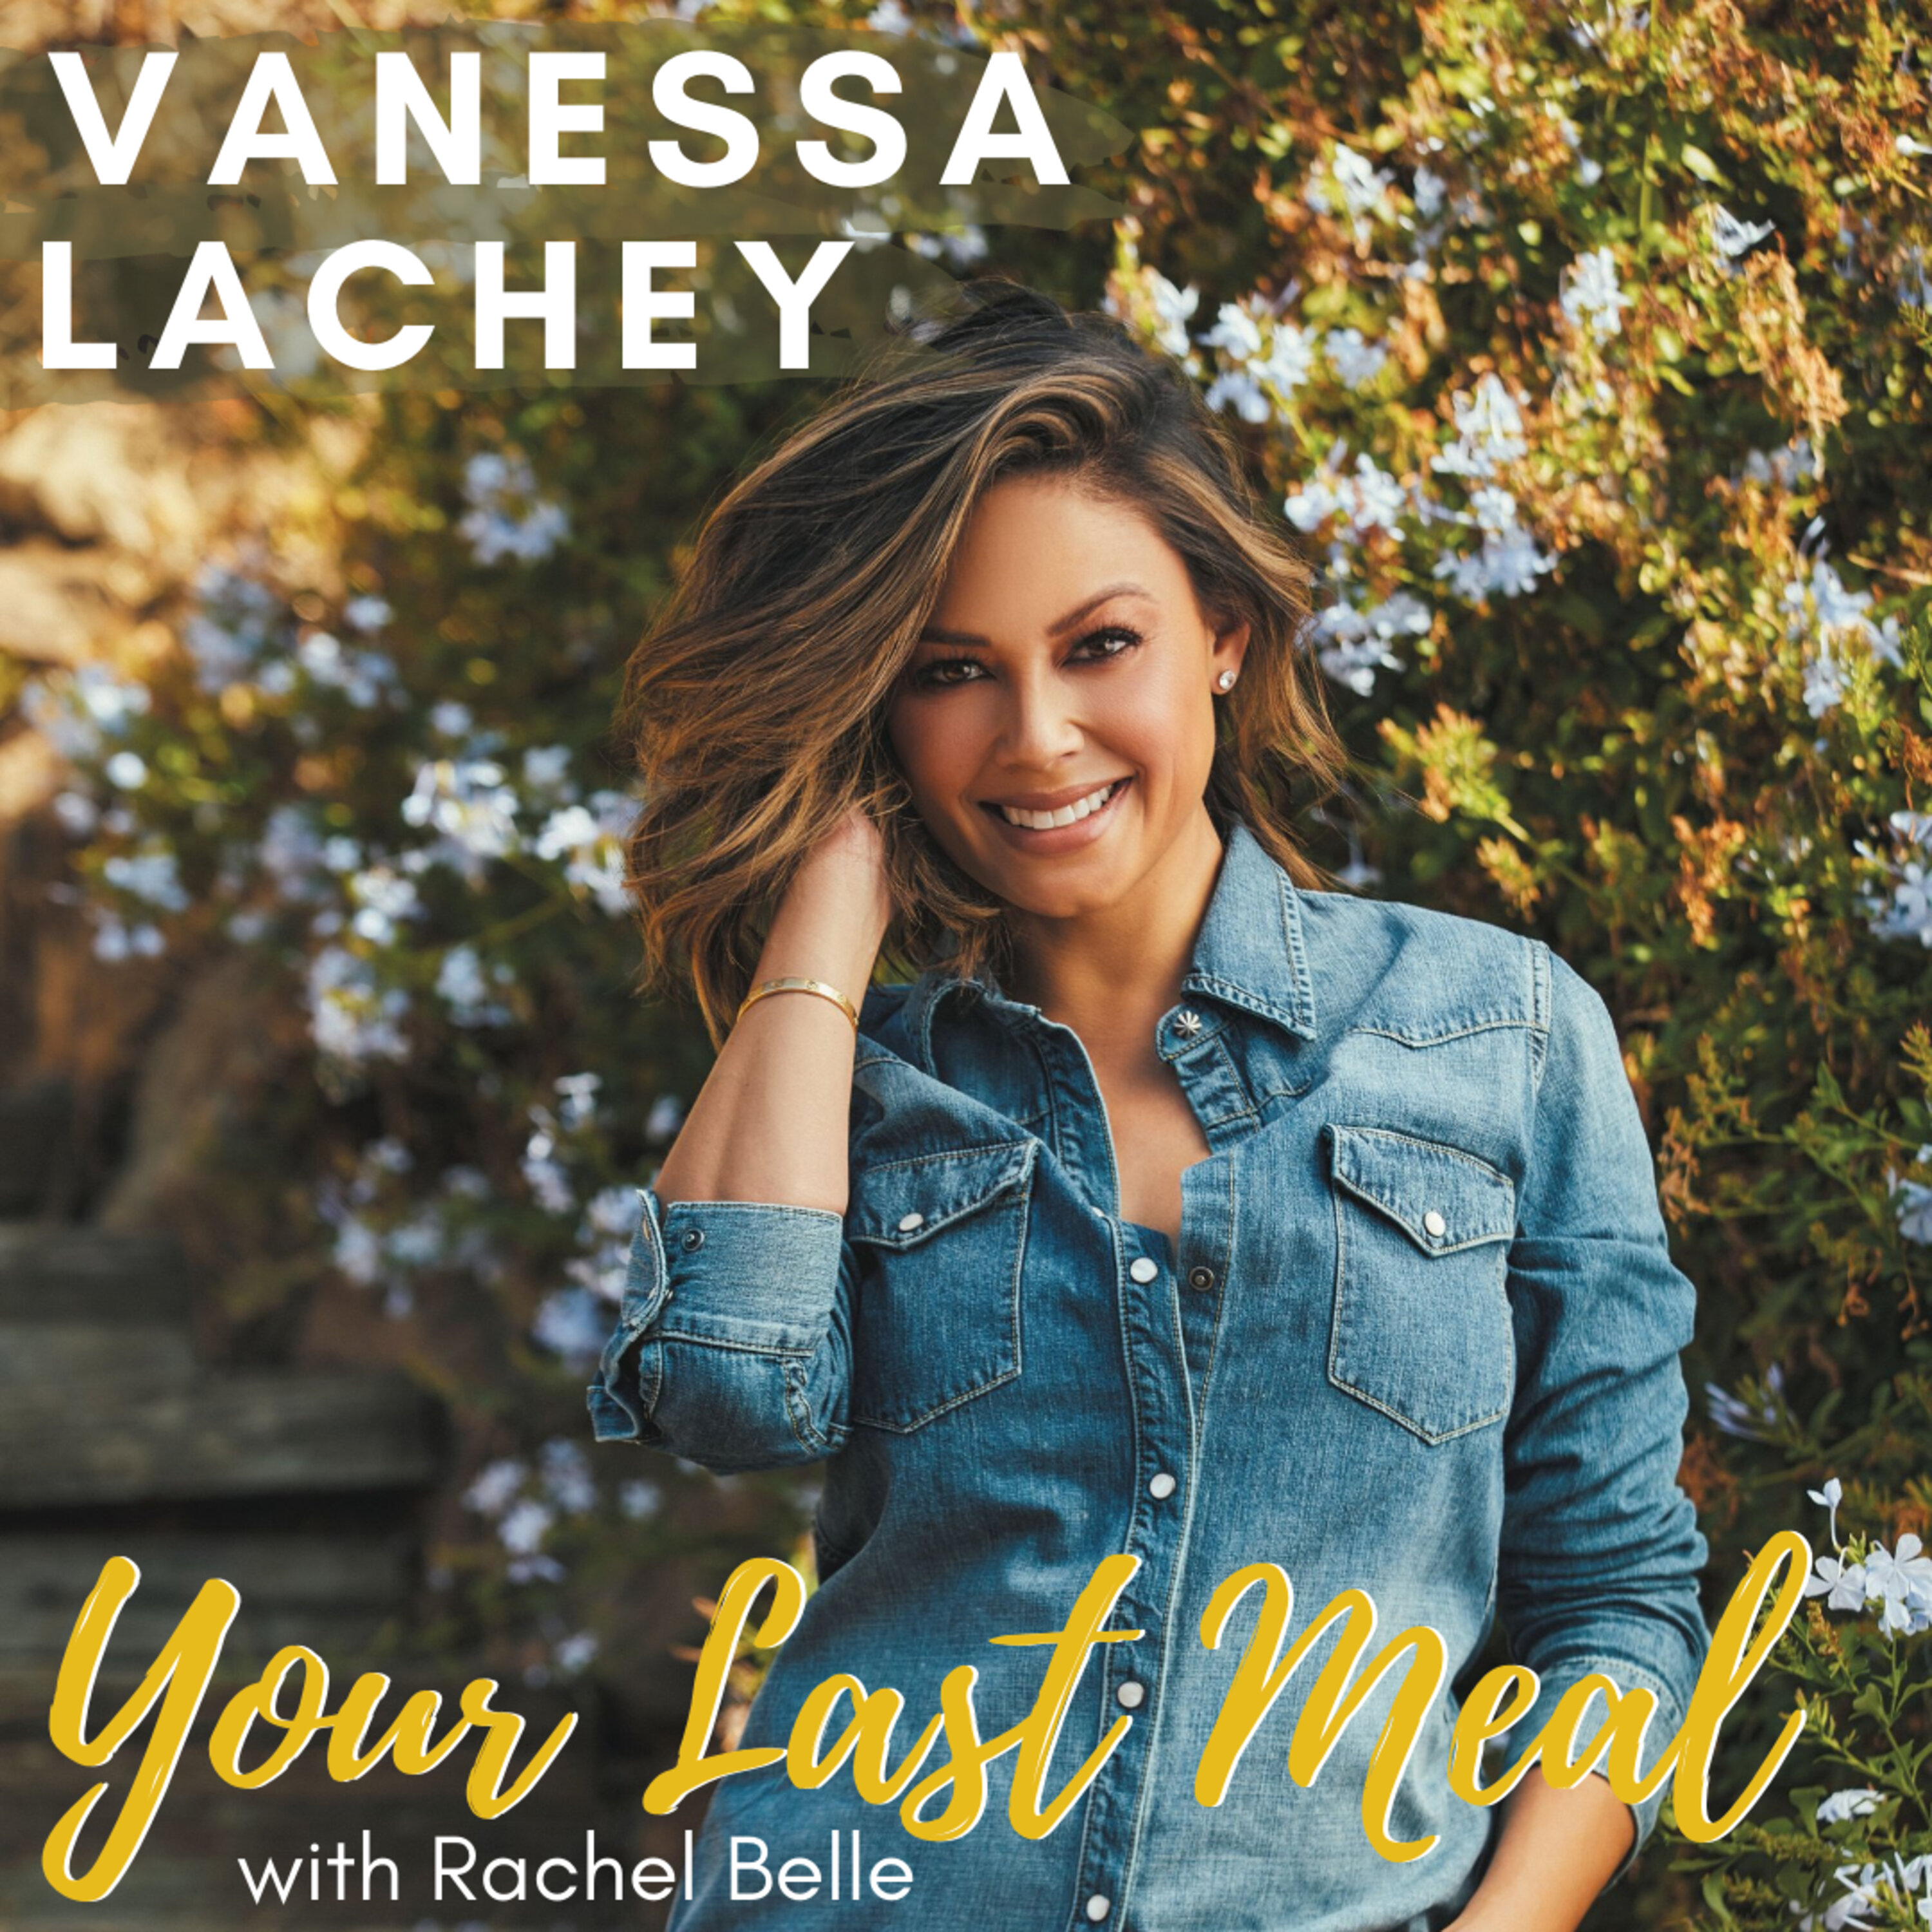 Vanessa Lachey: Lasagna